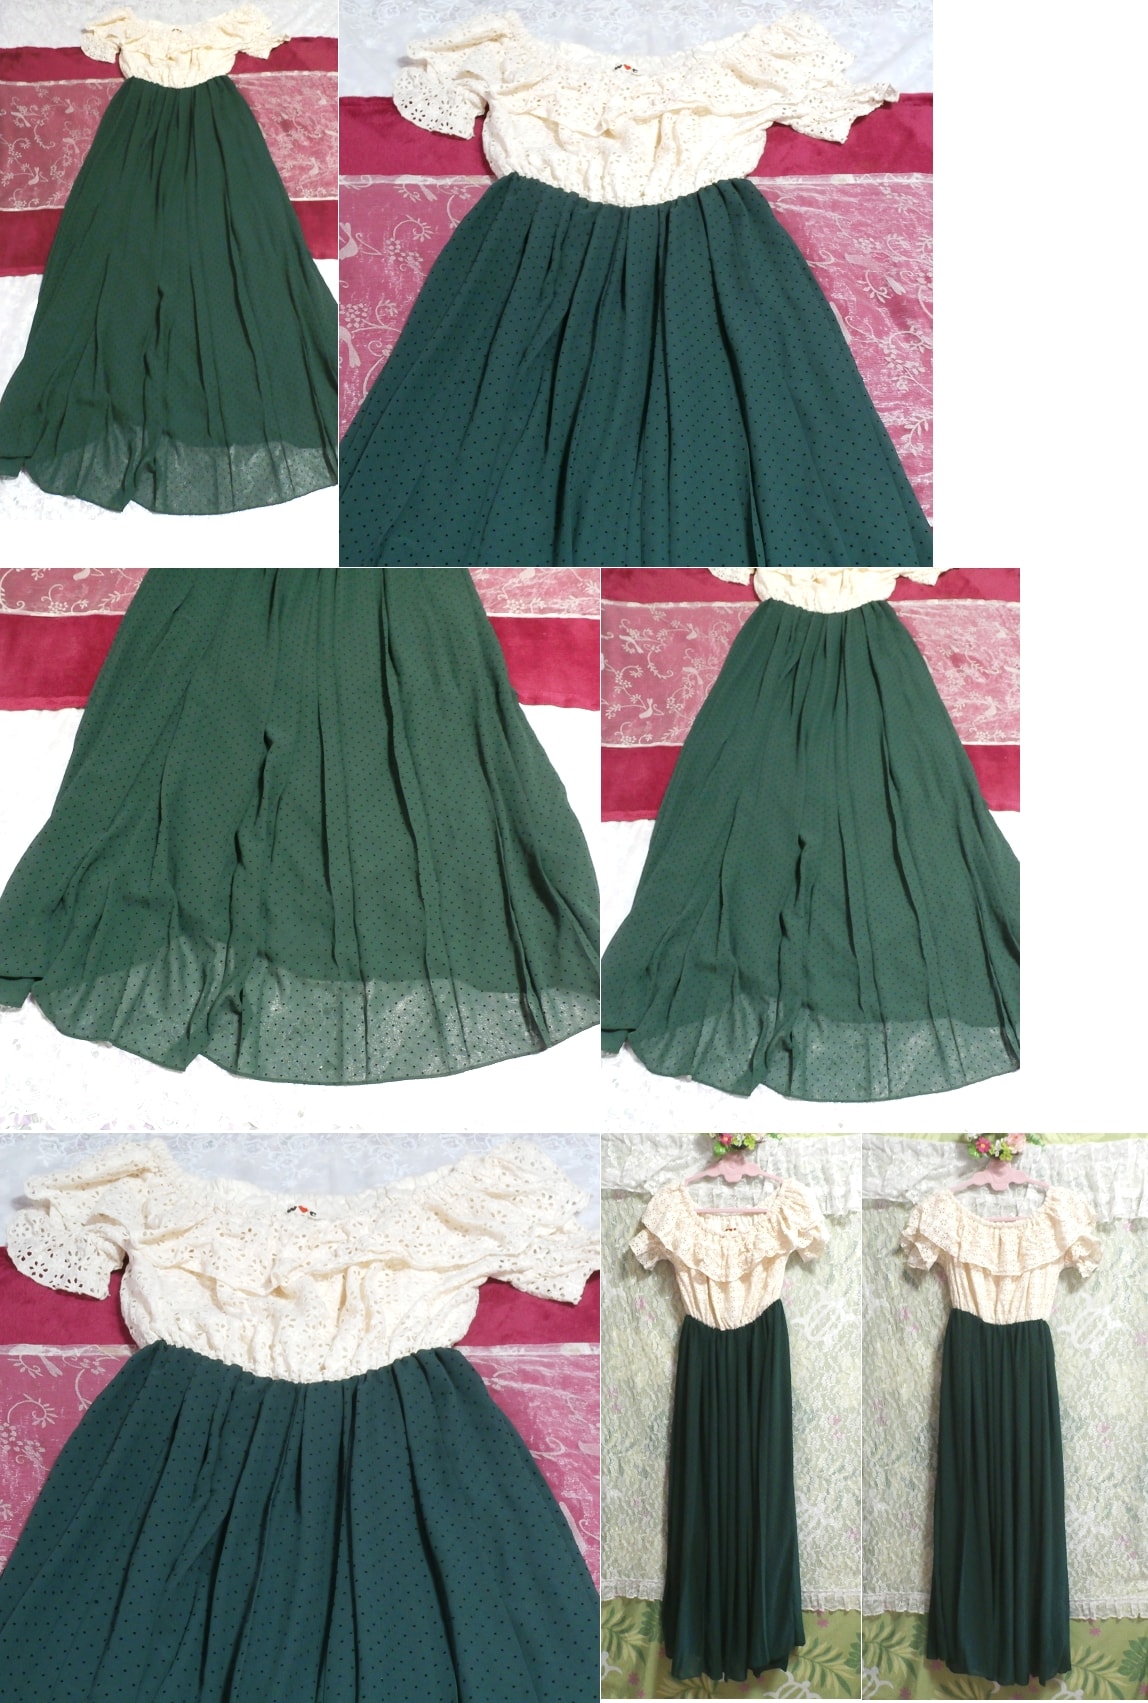 화이트 꽃무늬 화이트 레이스 네글리제 나이트가운 맥시 드레스 그린 쉬폰 스커트 드레스, 롱 스커트, m 사이즈